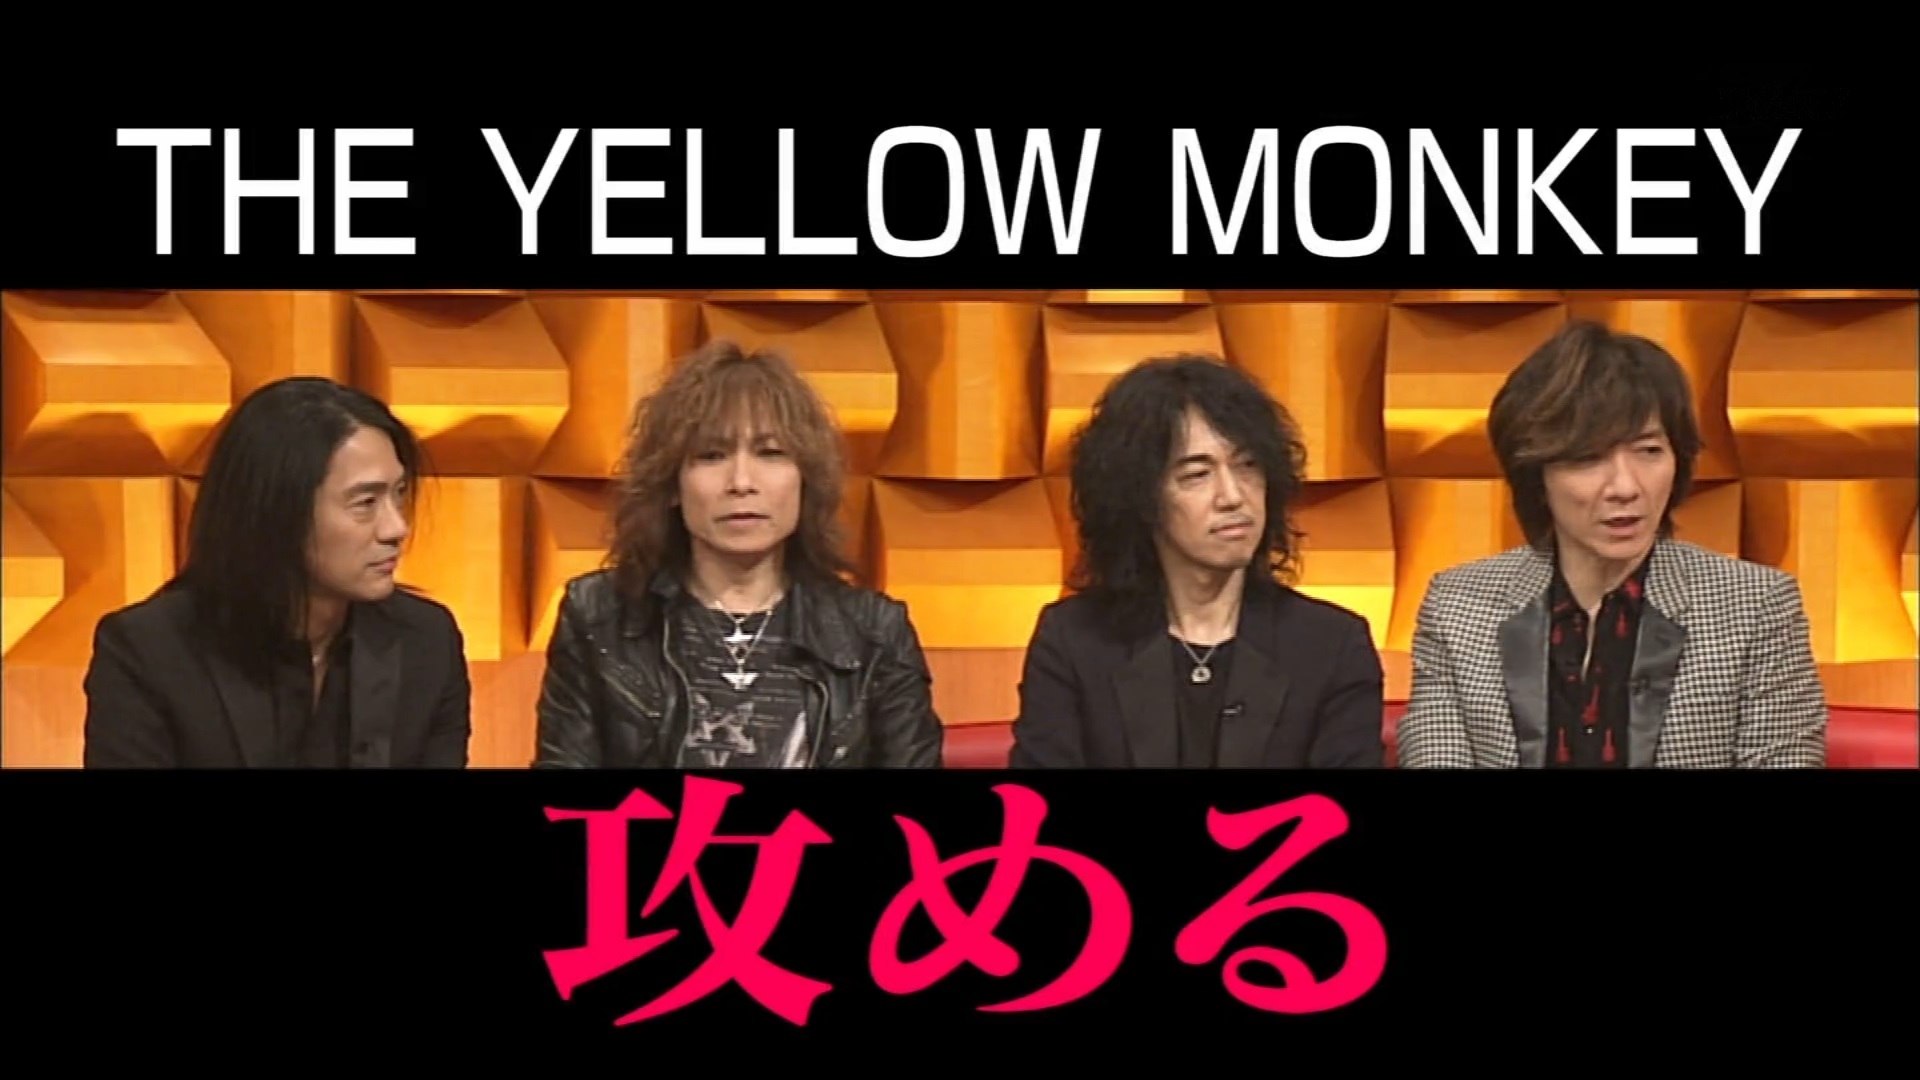 トーク Alright The Yellow Monkey イエモン 16 10 15 動画 Dailymotion